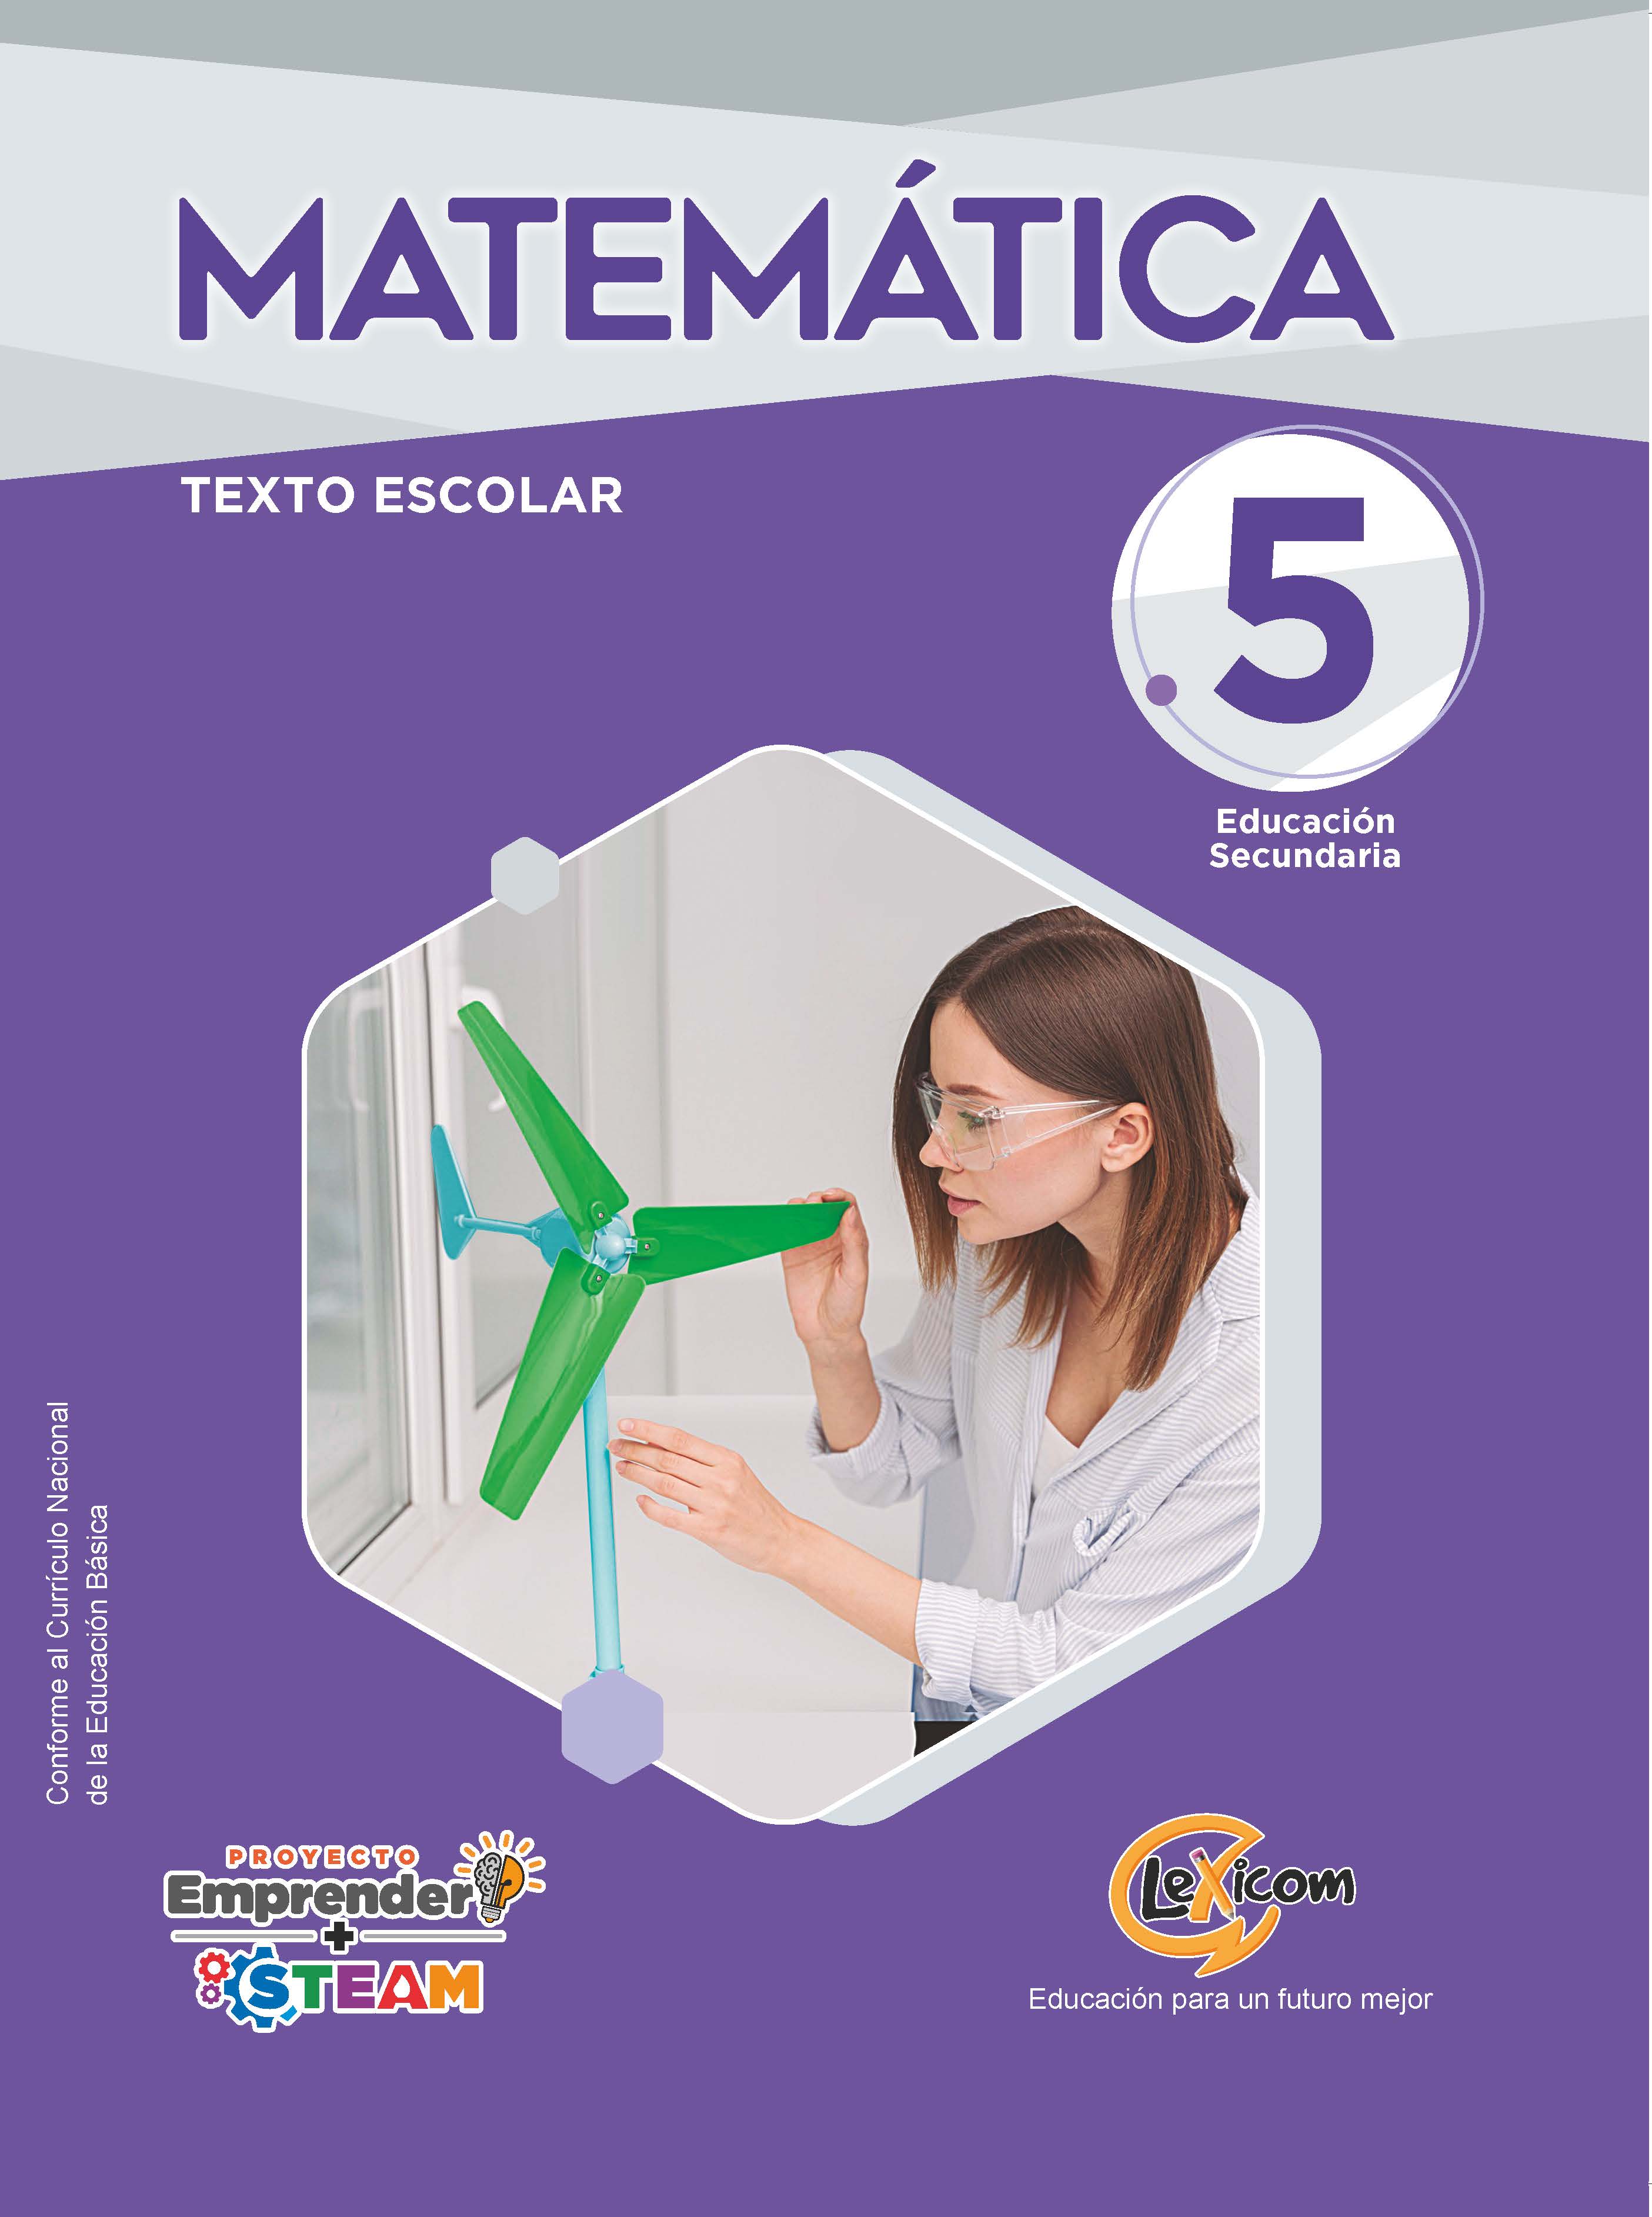 Matemática 5, educación secundaria